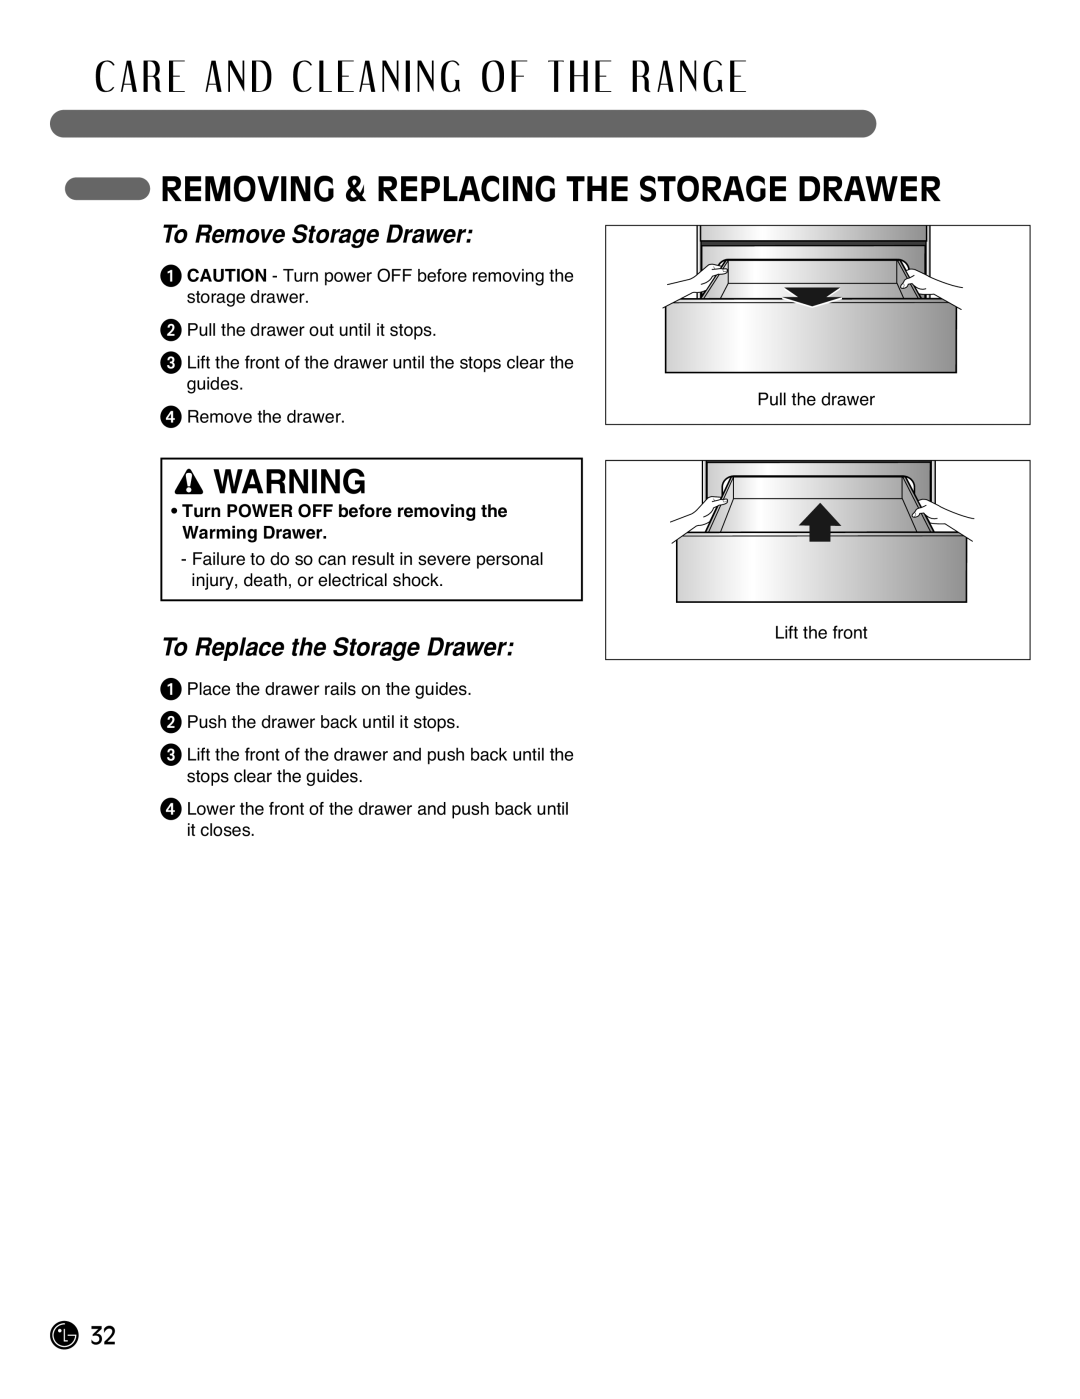 LG Electronics LRG3093ST manual Removing & Replacing The Storage Drawer, C A R E A N D C L E A N I N G O F T H E R A N G E 